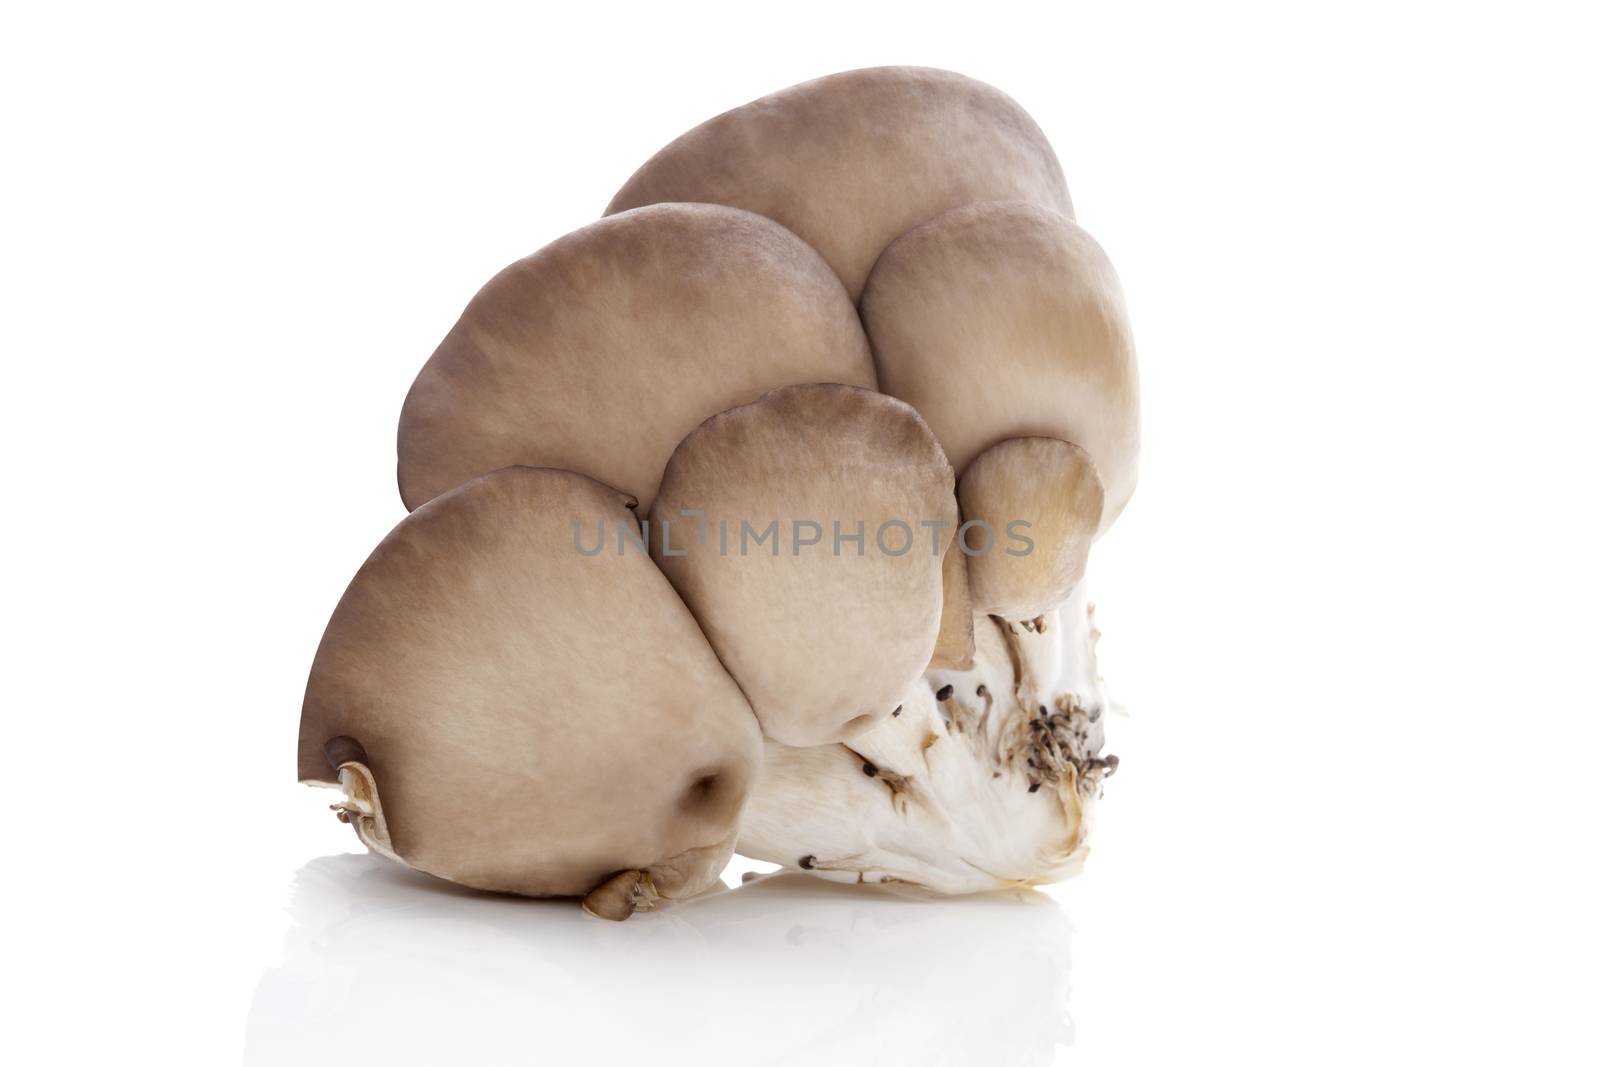 Fresh oyster mushrooms. by eskymaks